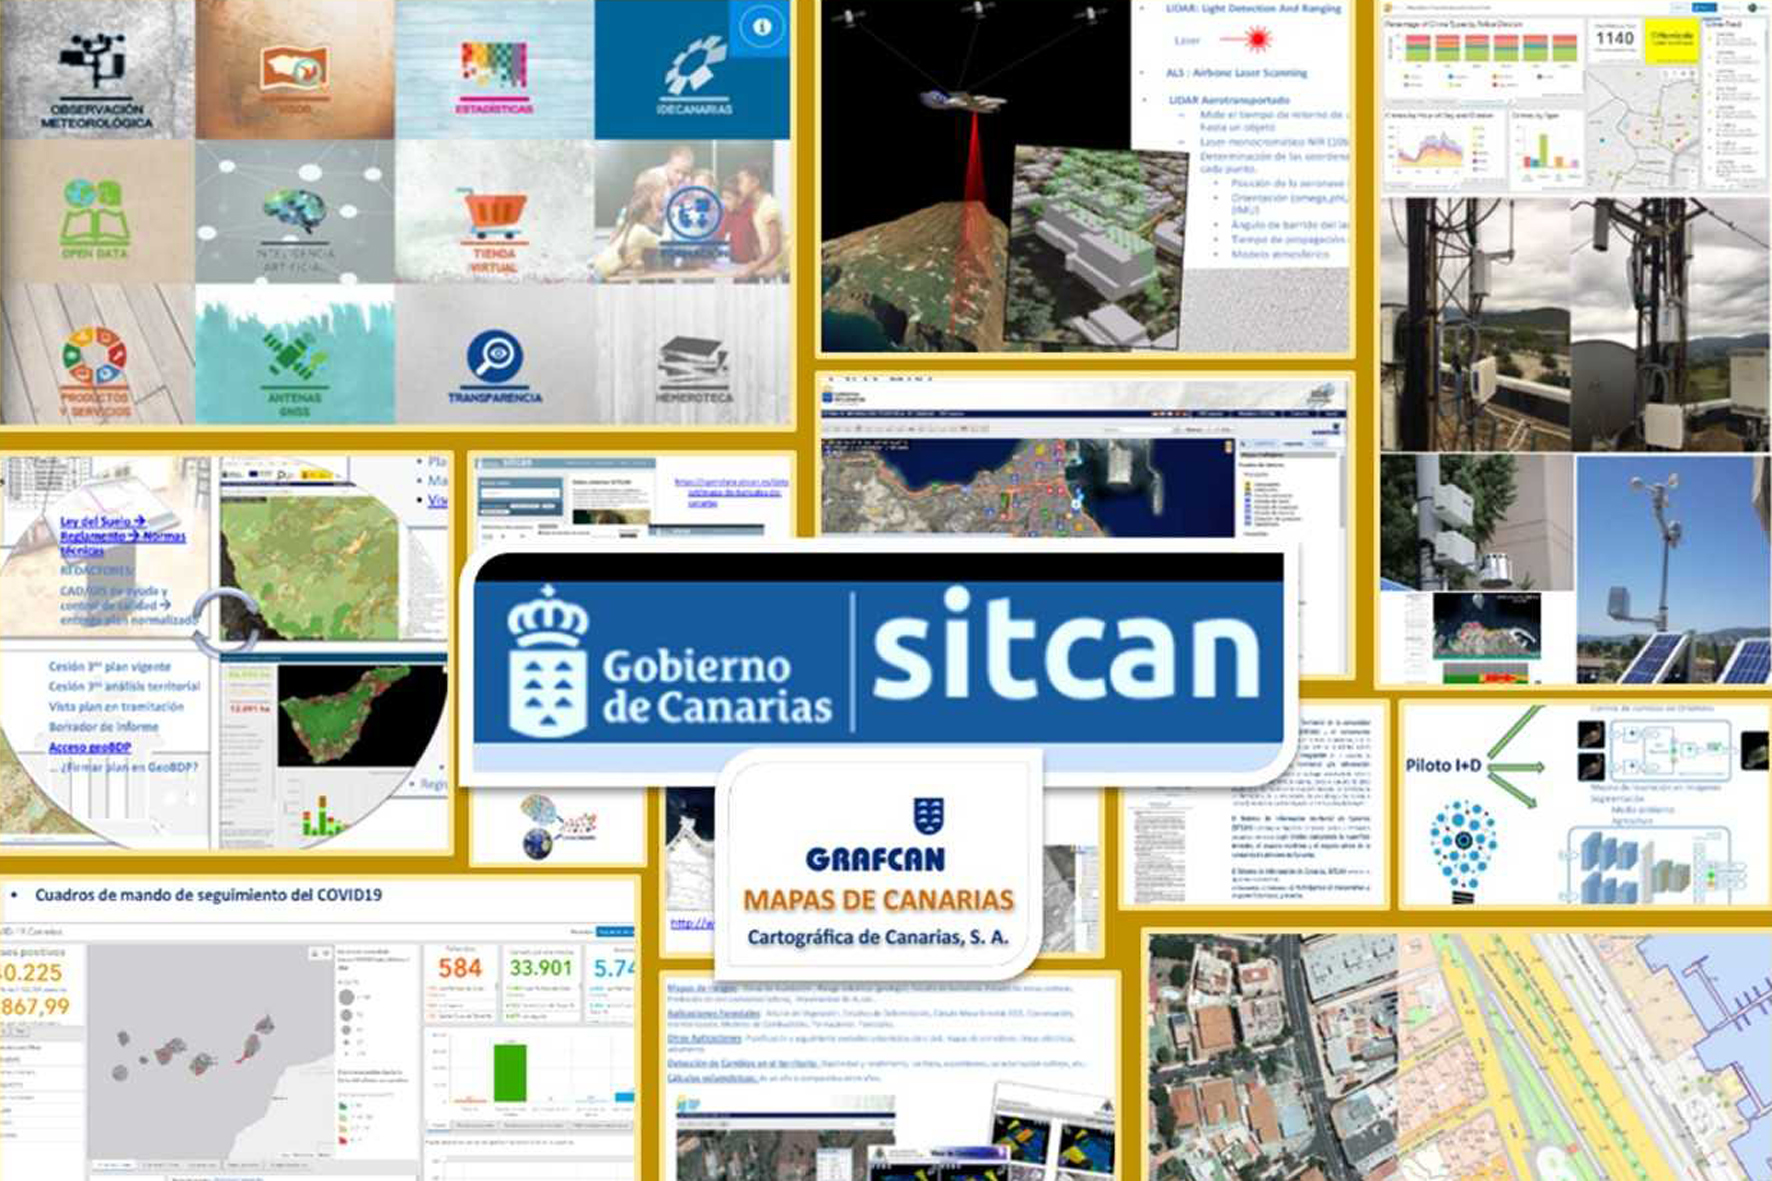 Transición Ecológica presenta el convenio para el mantenimiento del SITCAN a ayuntamientos de Tenerife y El Hierro